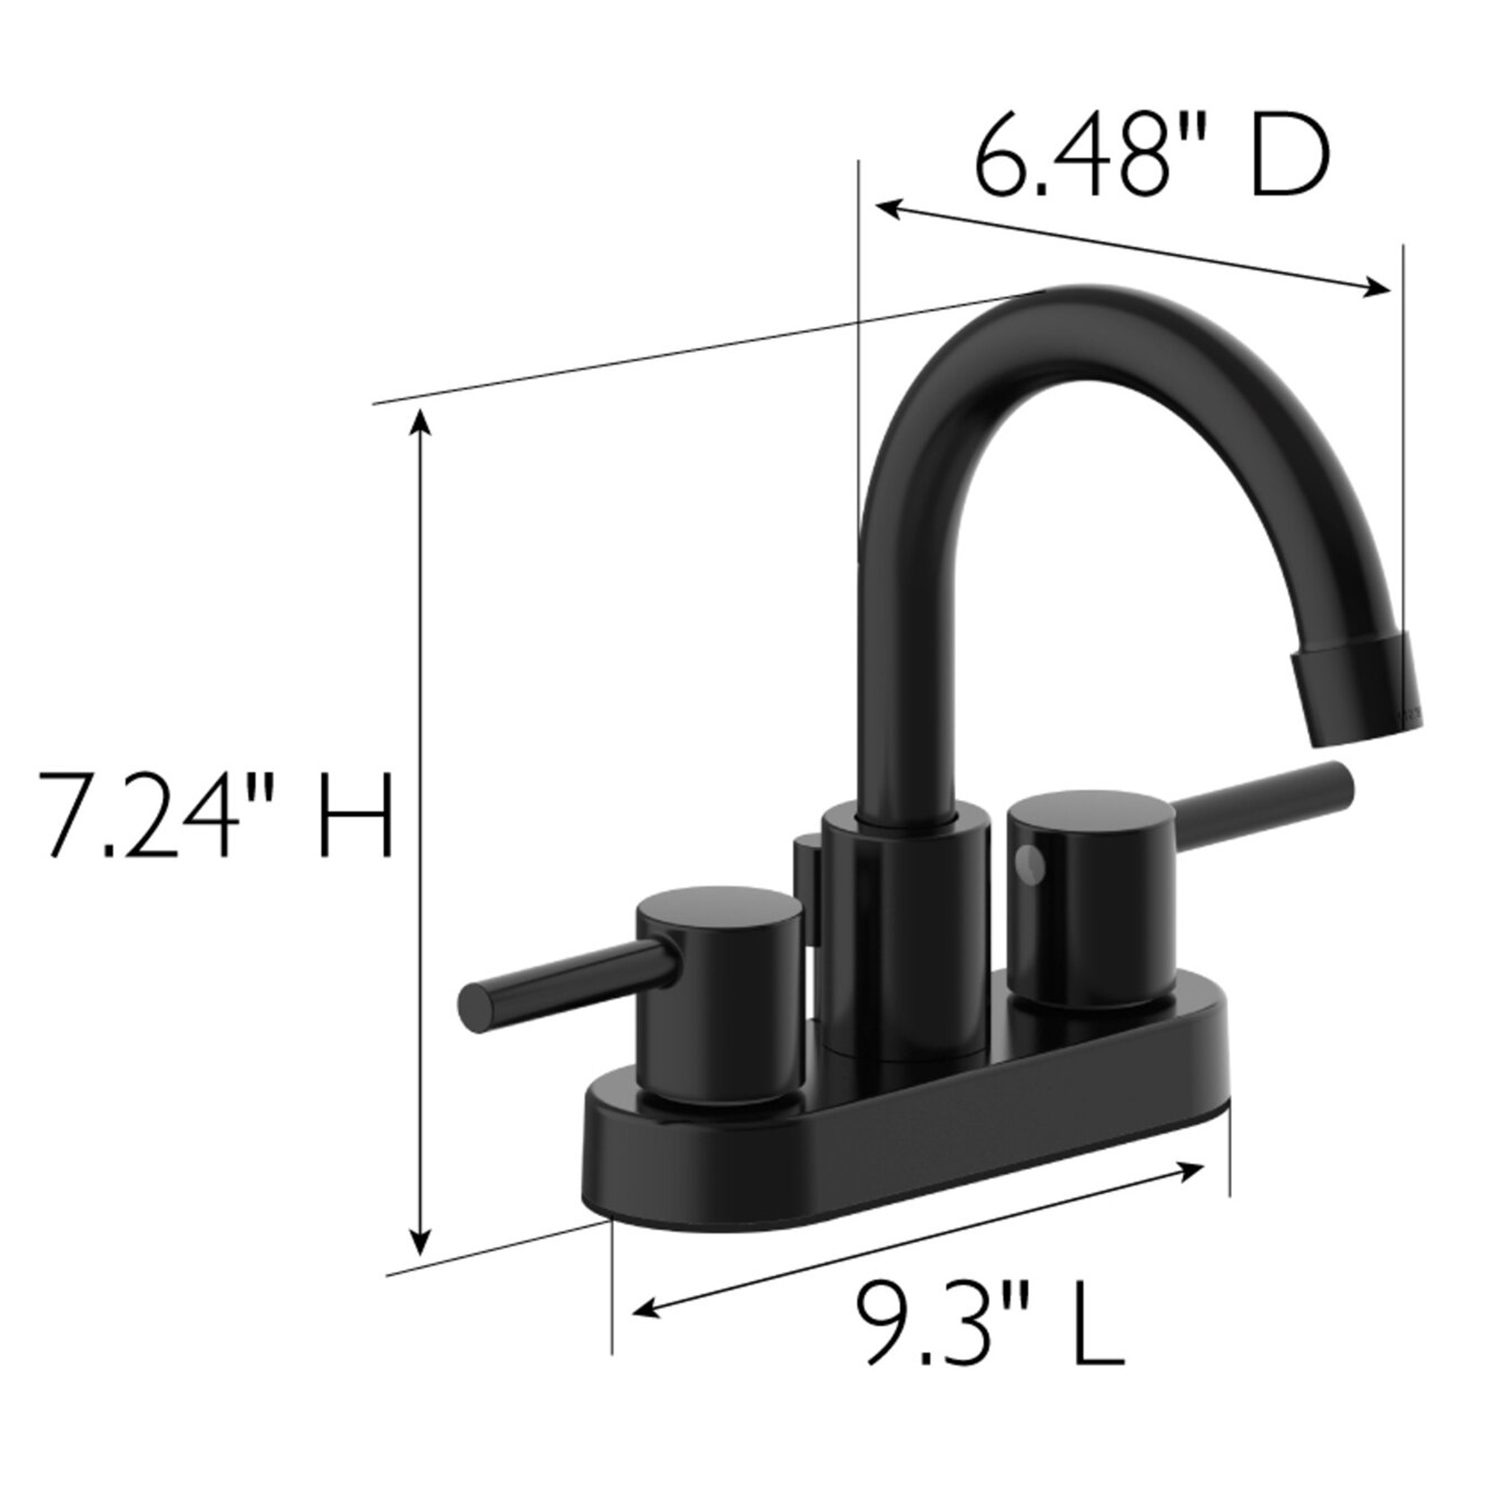 Aquacubic Chrome Surface с двойной ручкой 8 дюймов, широко распространенный смеситель для умывальника в ванной комнате